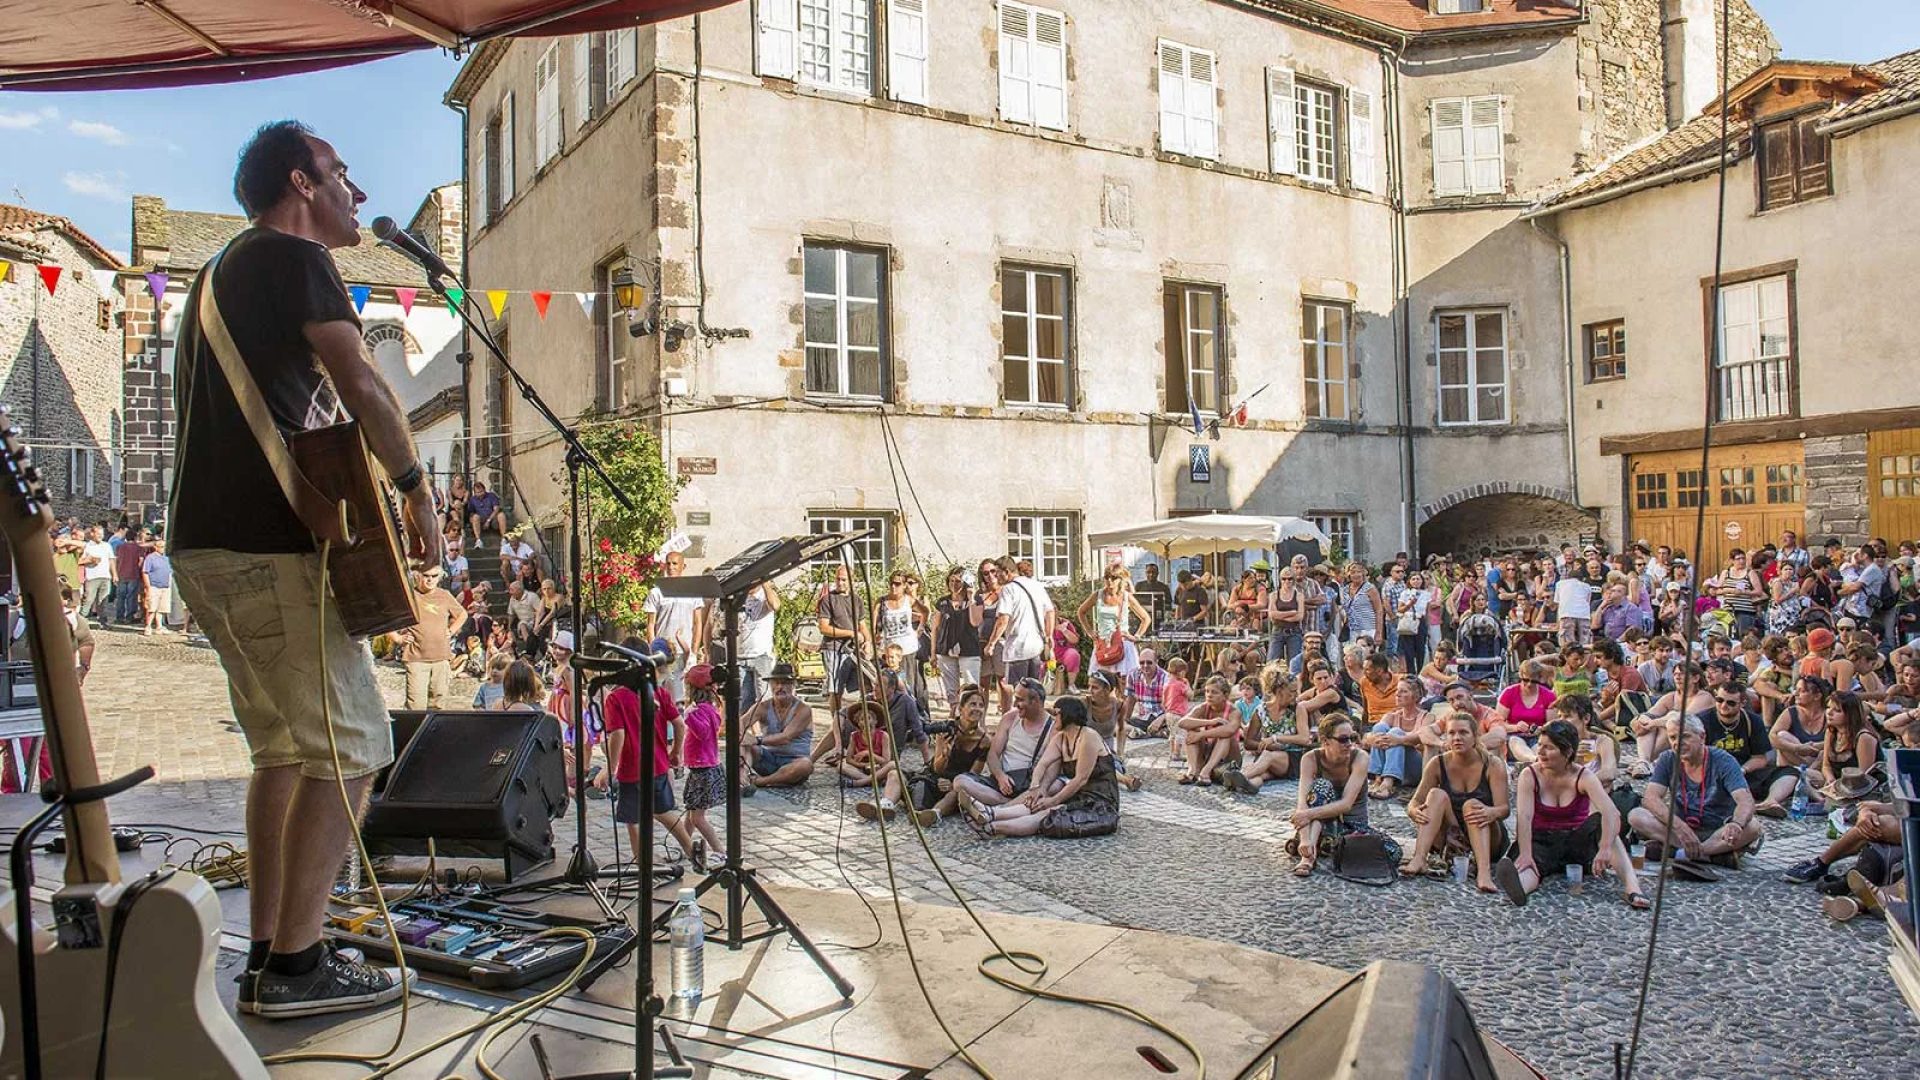 Un cantante si esibisce su un palco all'aperto davanti a una folla di persone sedute all'Apéros musique de Blesle in Haute-Loire, Alvernia